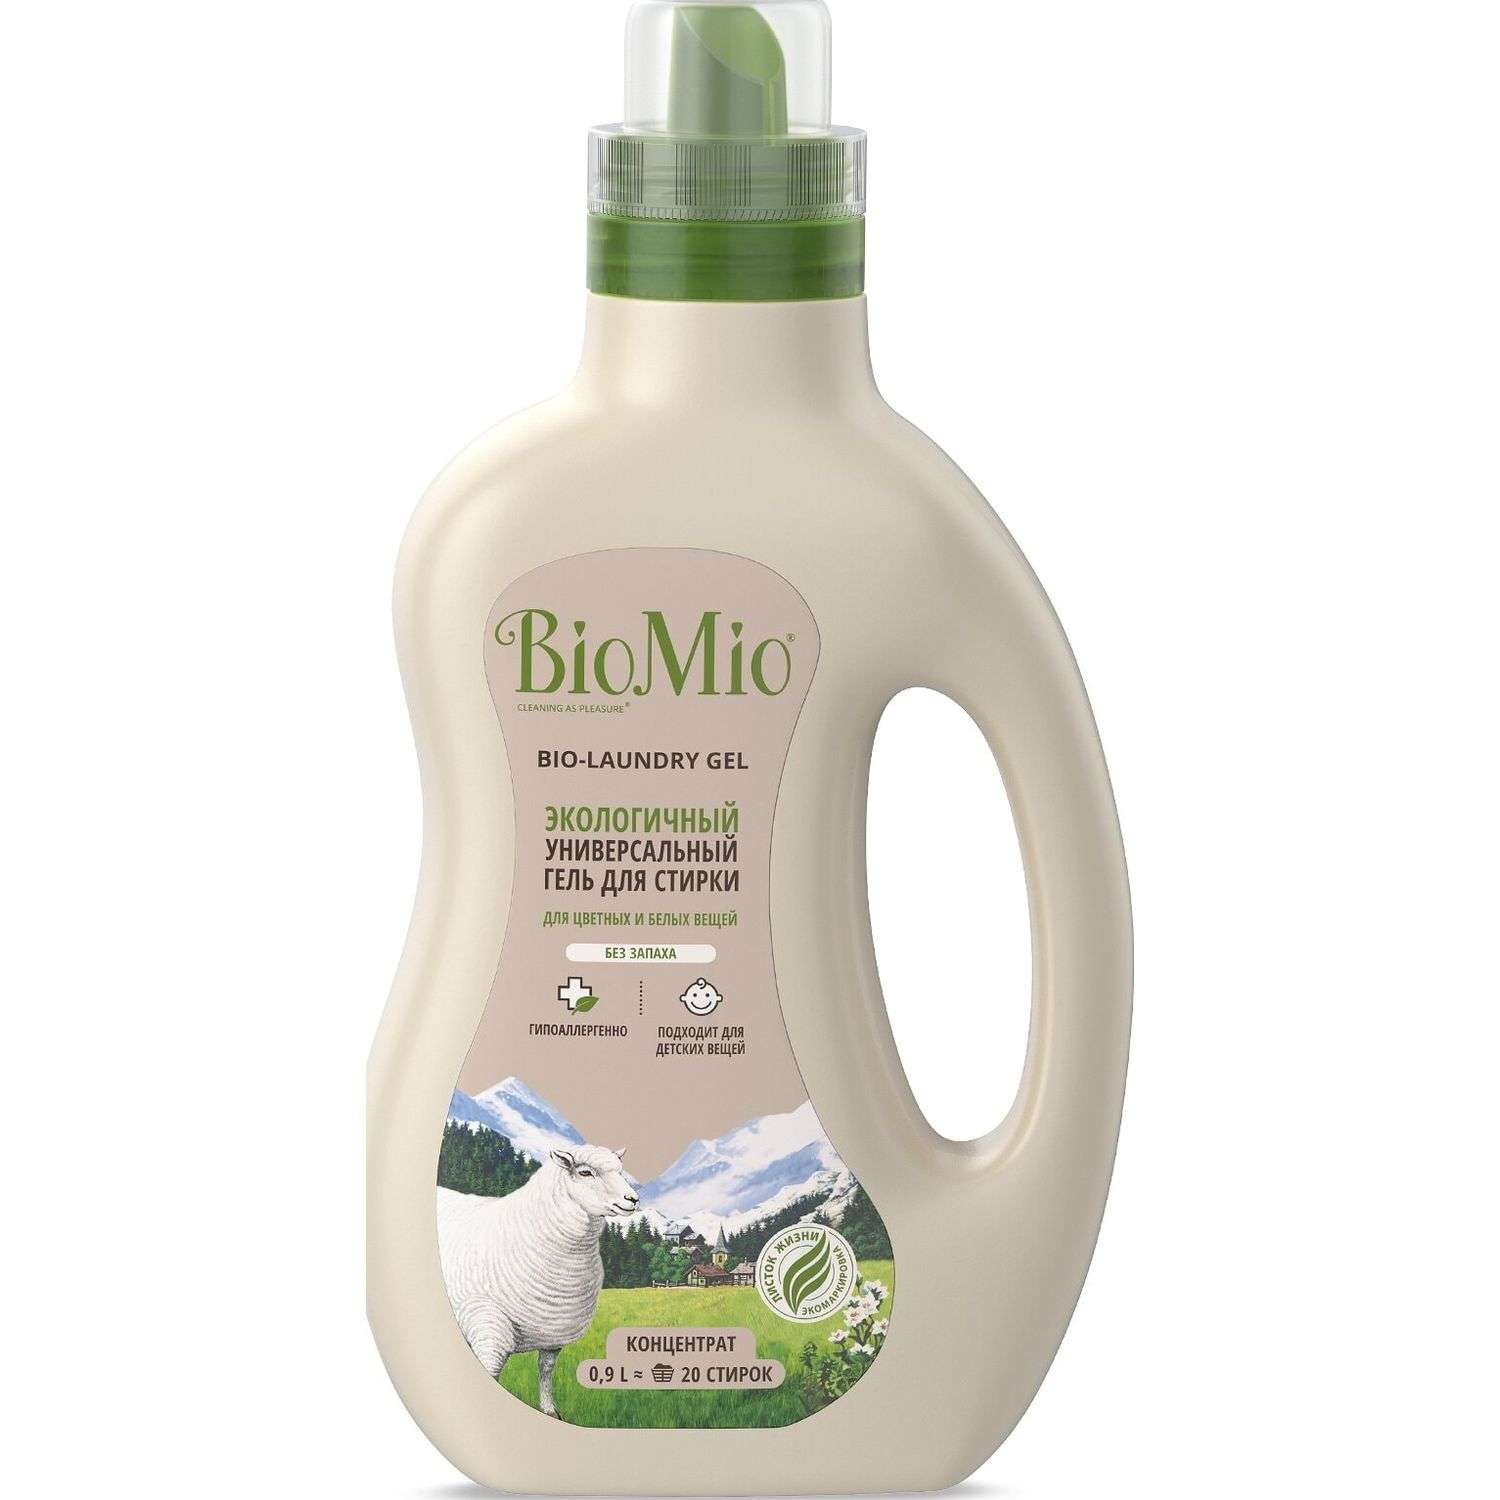 Гель для стирки BioMio Bio-Laundry Gel Colors and Whites универсальный 900мл - фото 1